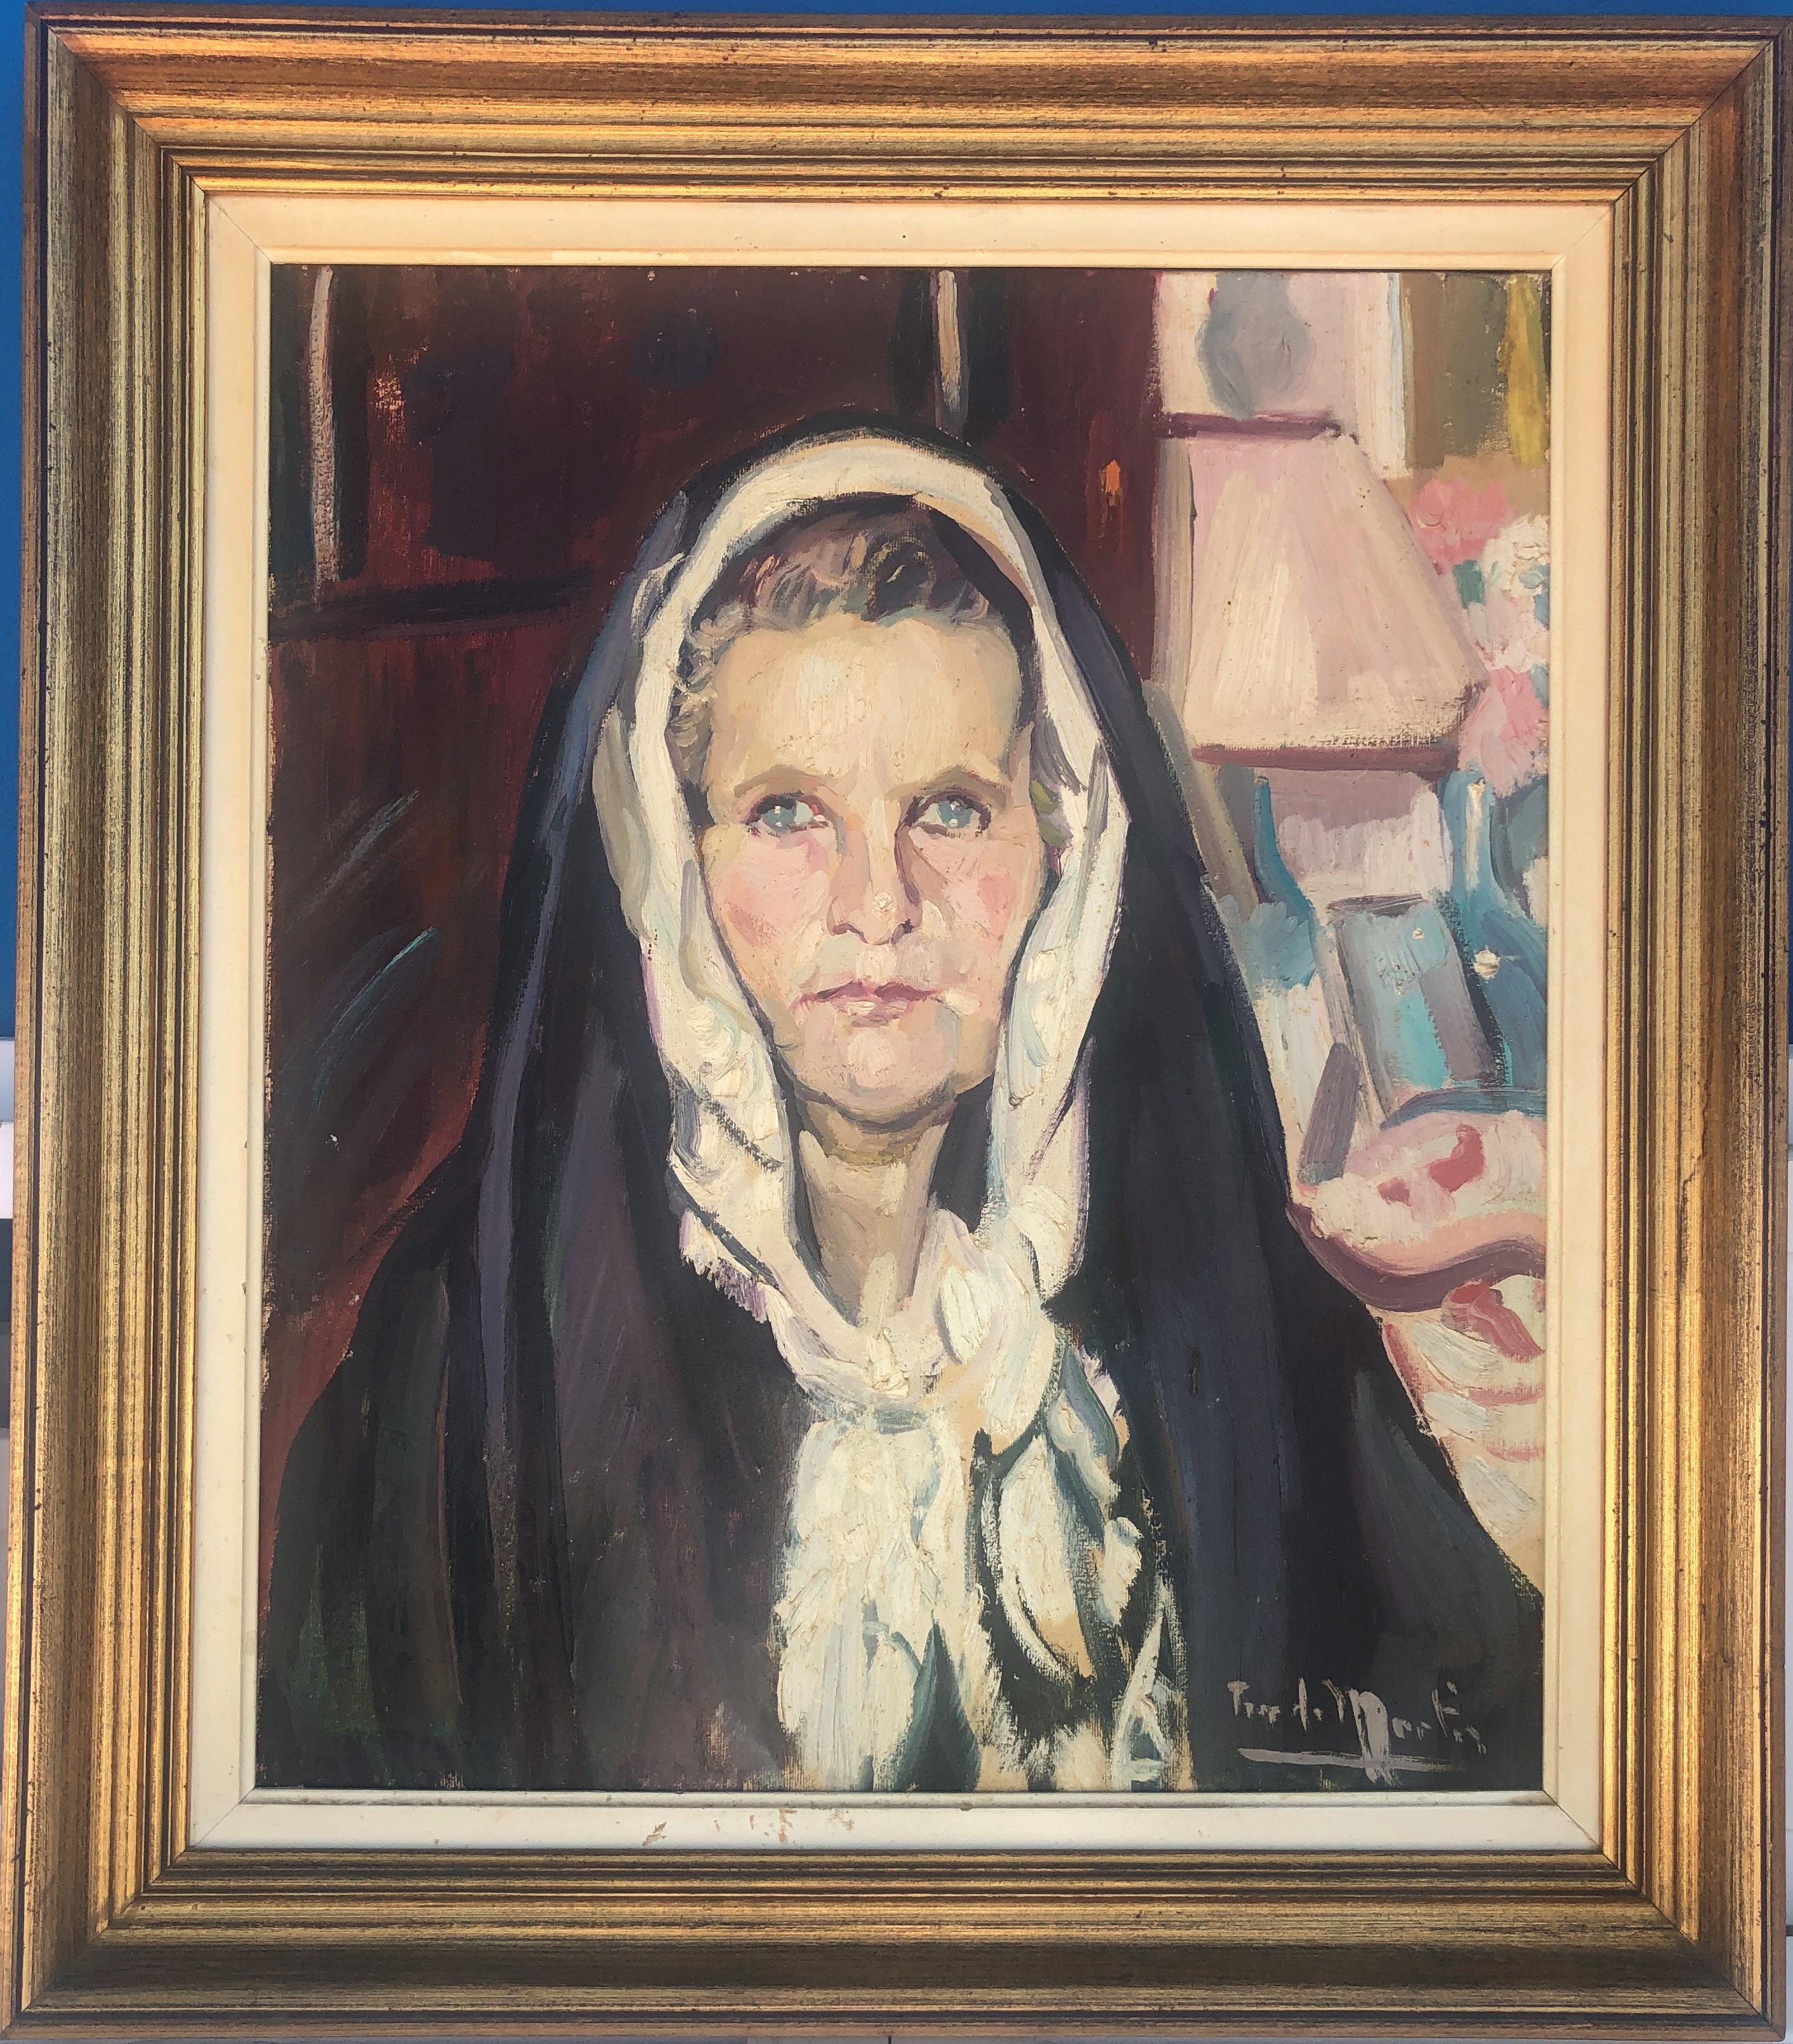 Huile sur toile - Portrait de femme espagnole d'Ibiza, peinture à l'huile sur toile - Painting de Mariano Tur de Montis